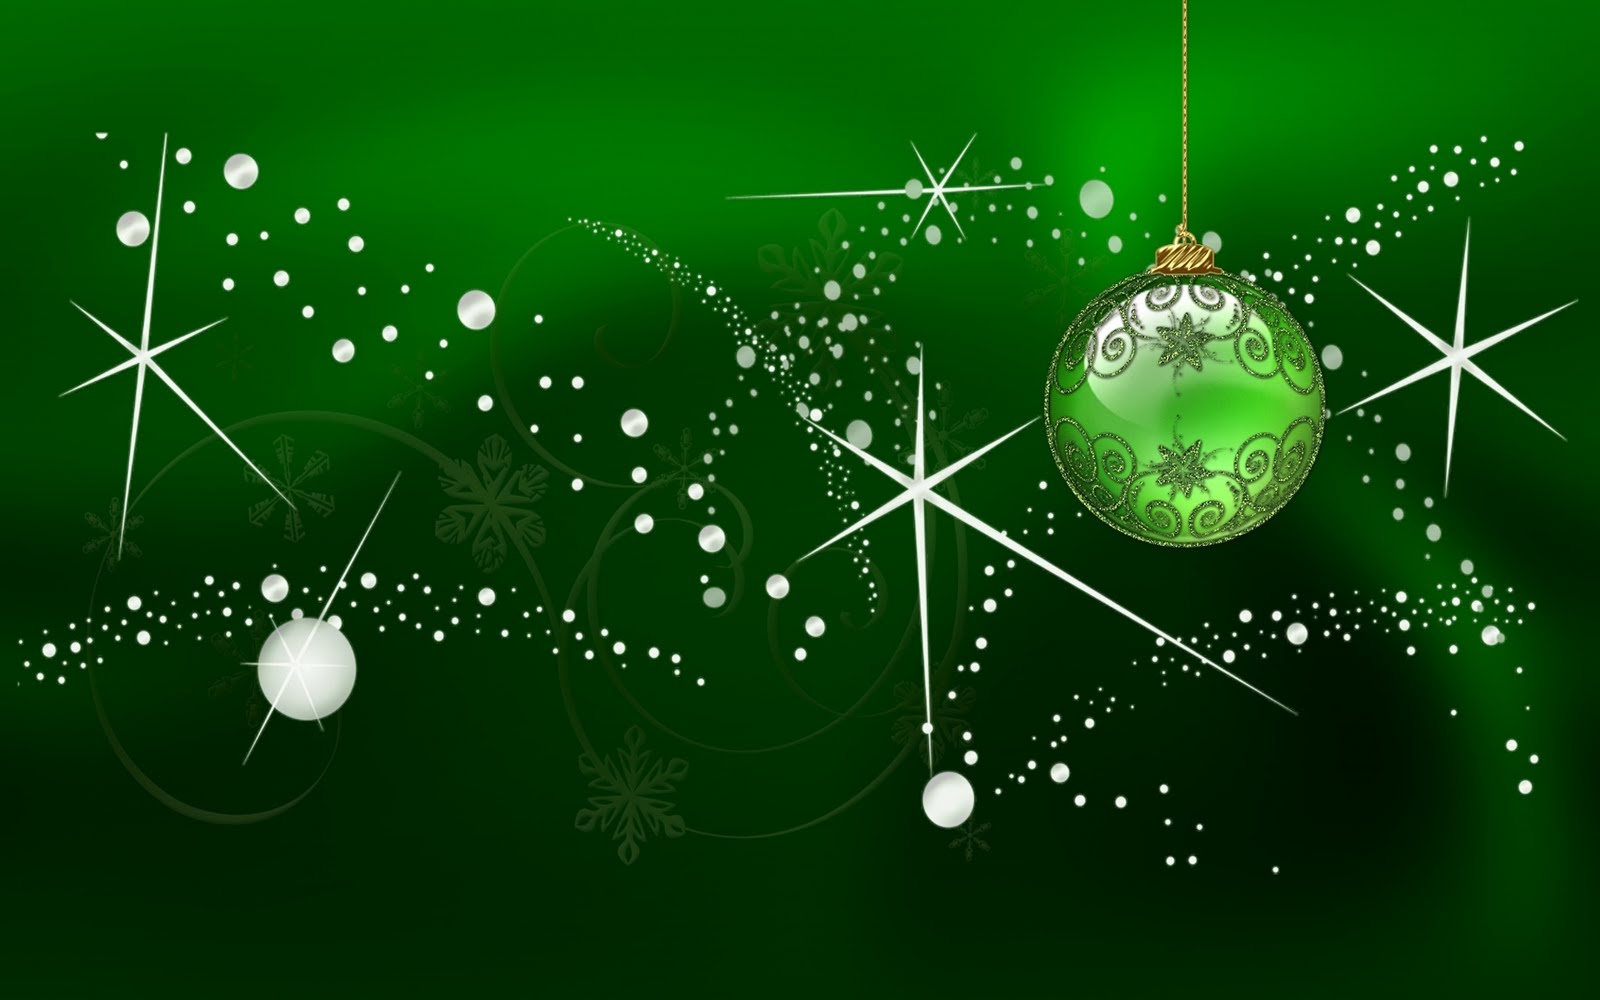 Wallpapers de navidad y año nuevo-merry chritsmas-new years